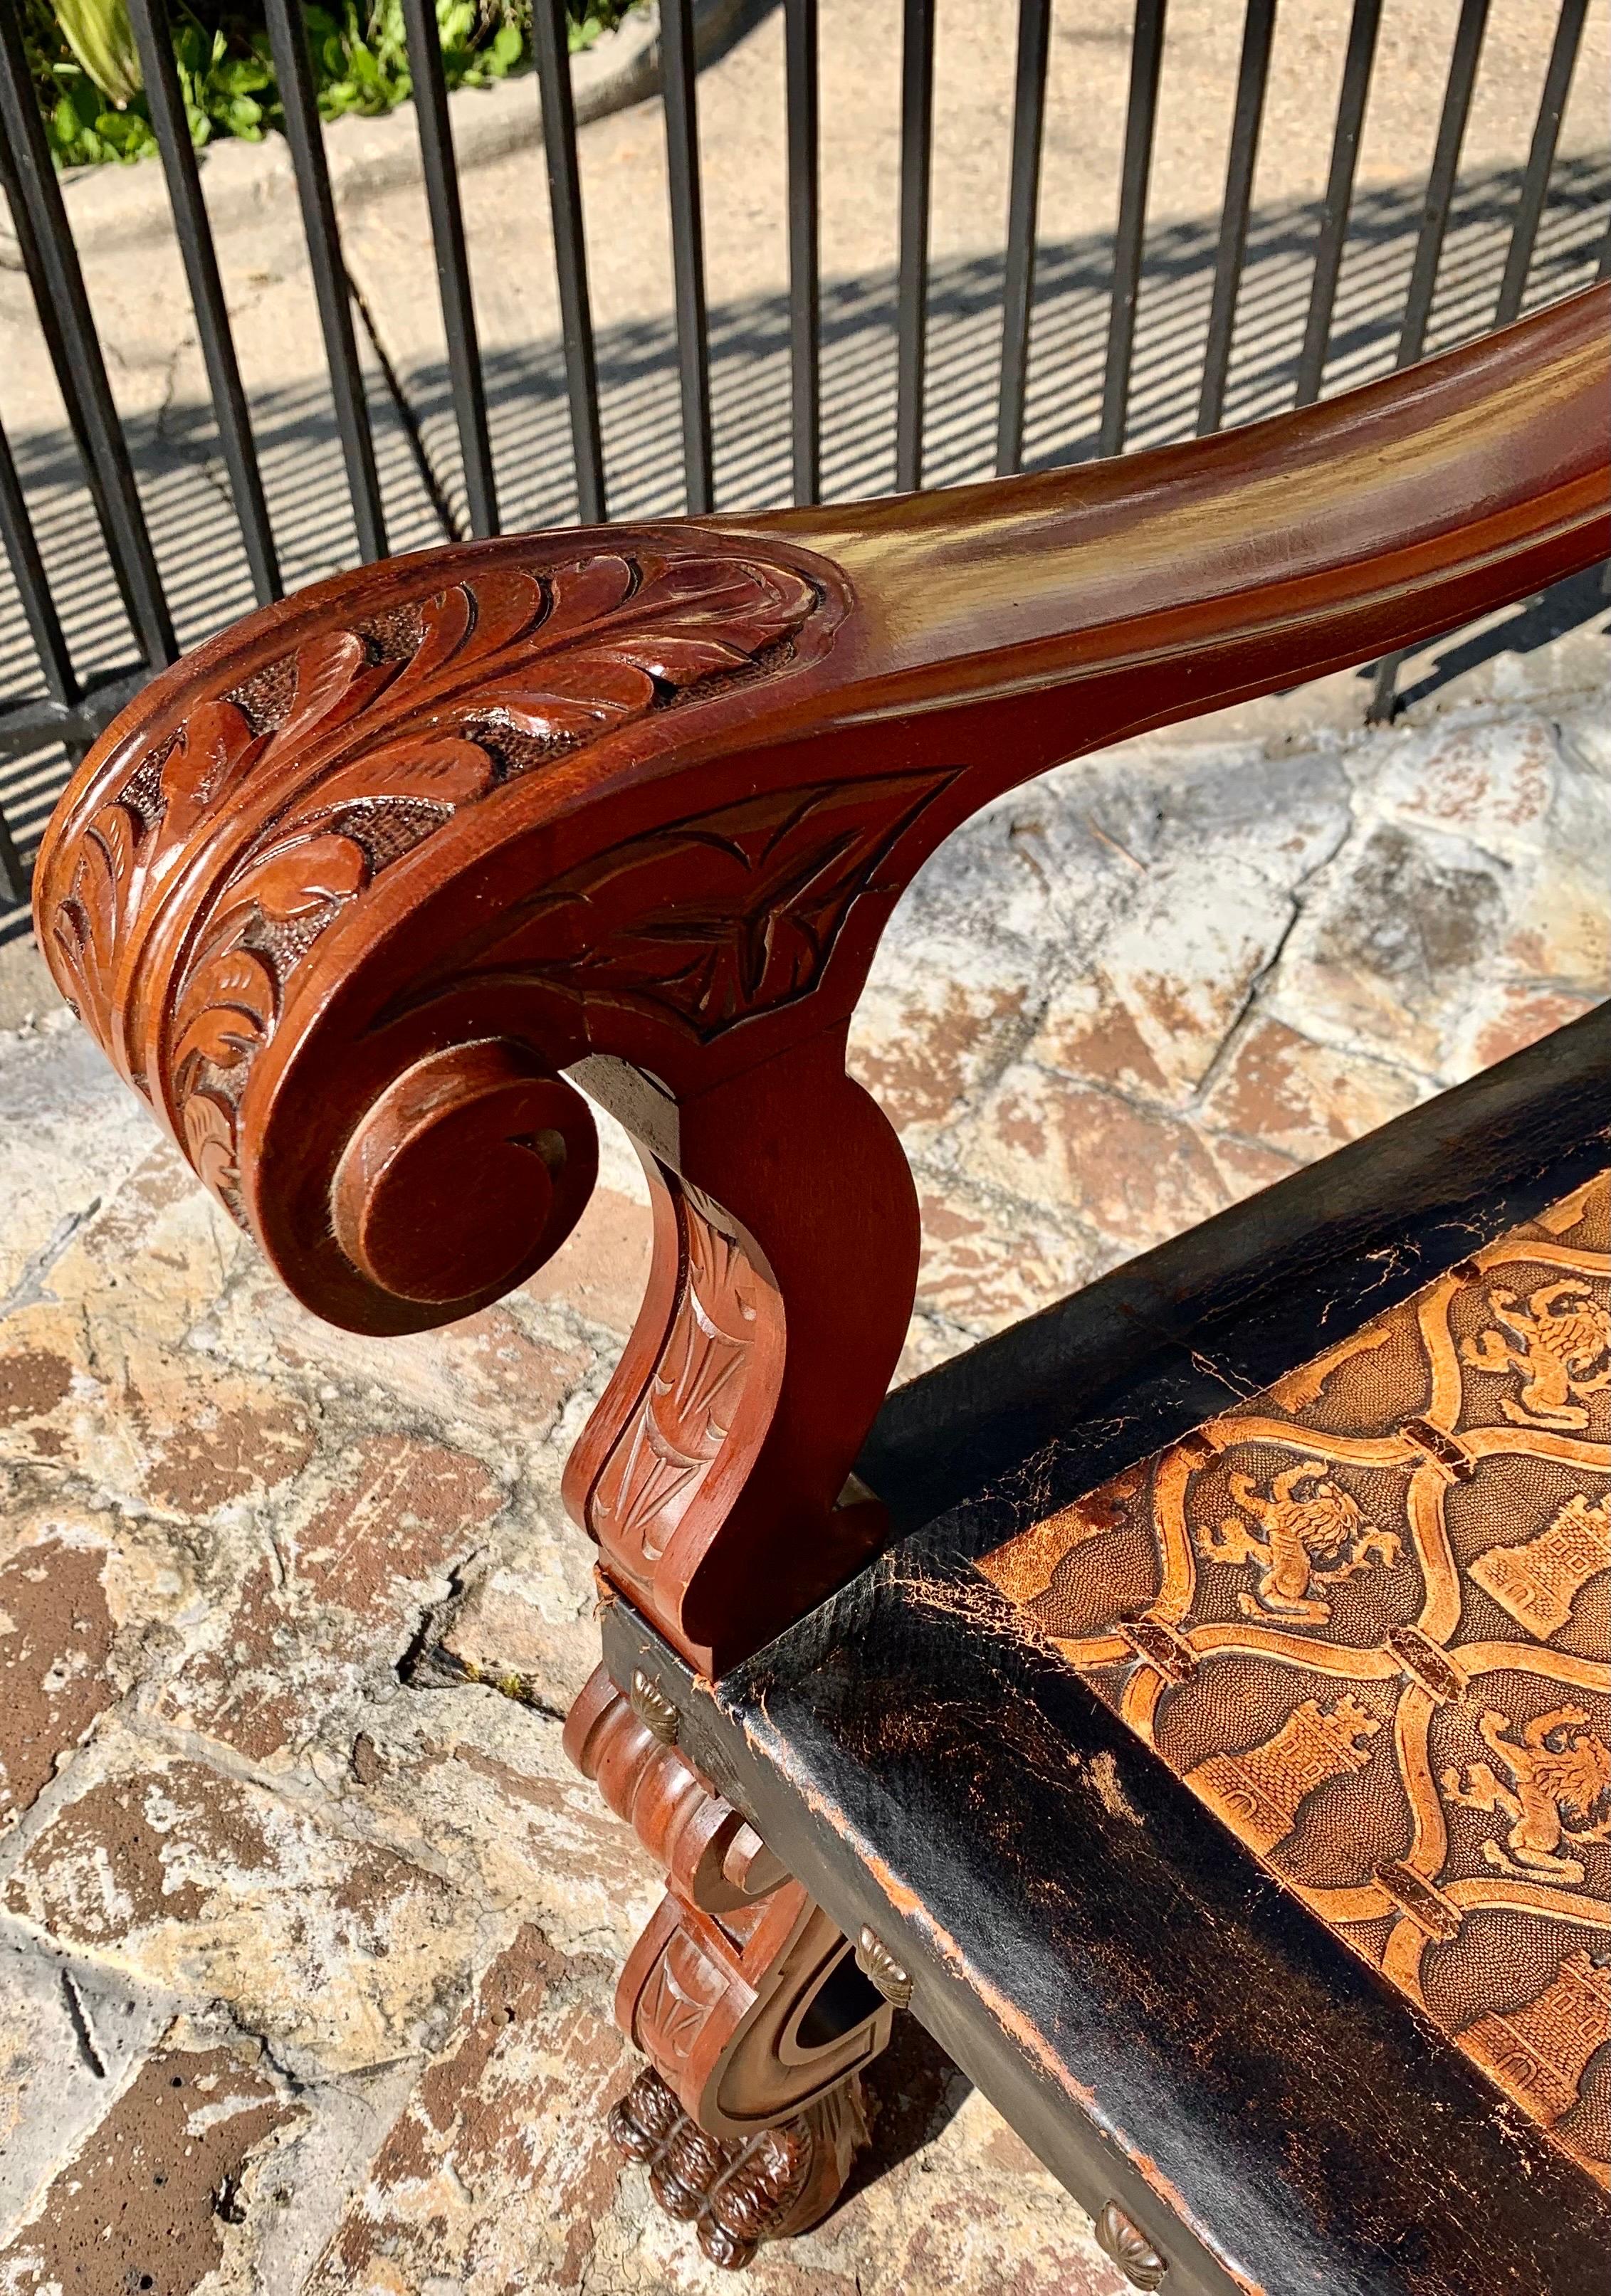 Ancien fauteuil castillan en acajou sculpté à la main et en cuir délicieusement gaufré, avec un beau profil sculpté d'un Conquistador espagnol dans la partie supérieure de la crête. Les bras sont sculptés de feuilles d'acanthe et les pieds de pattes